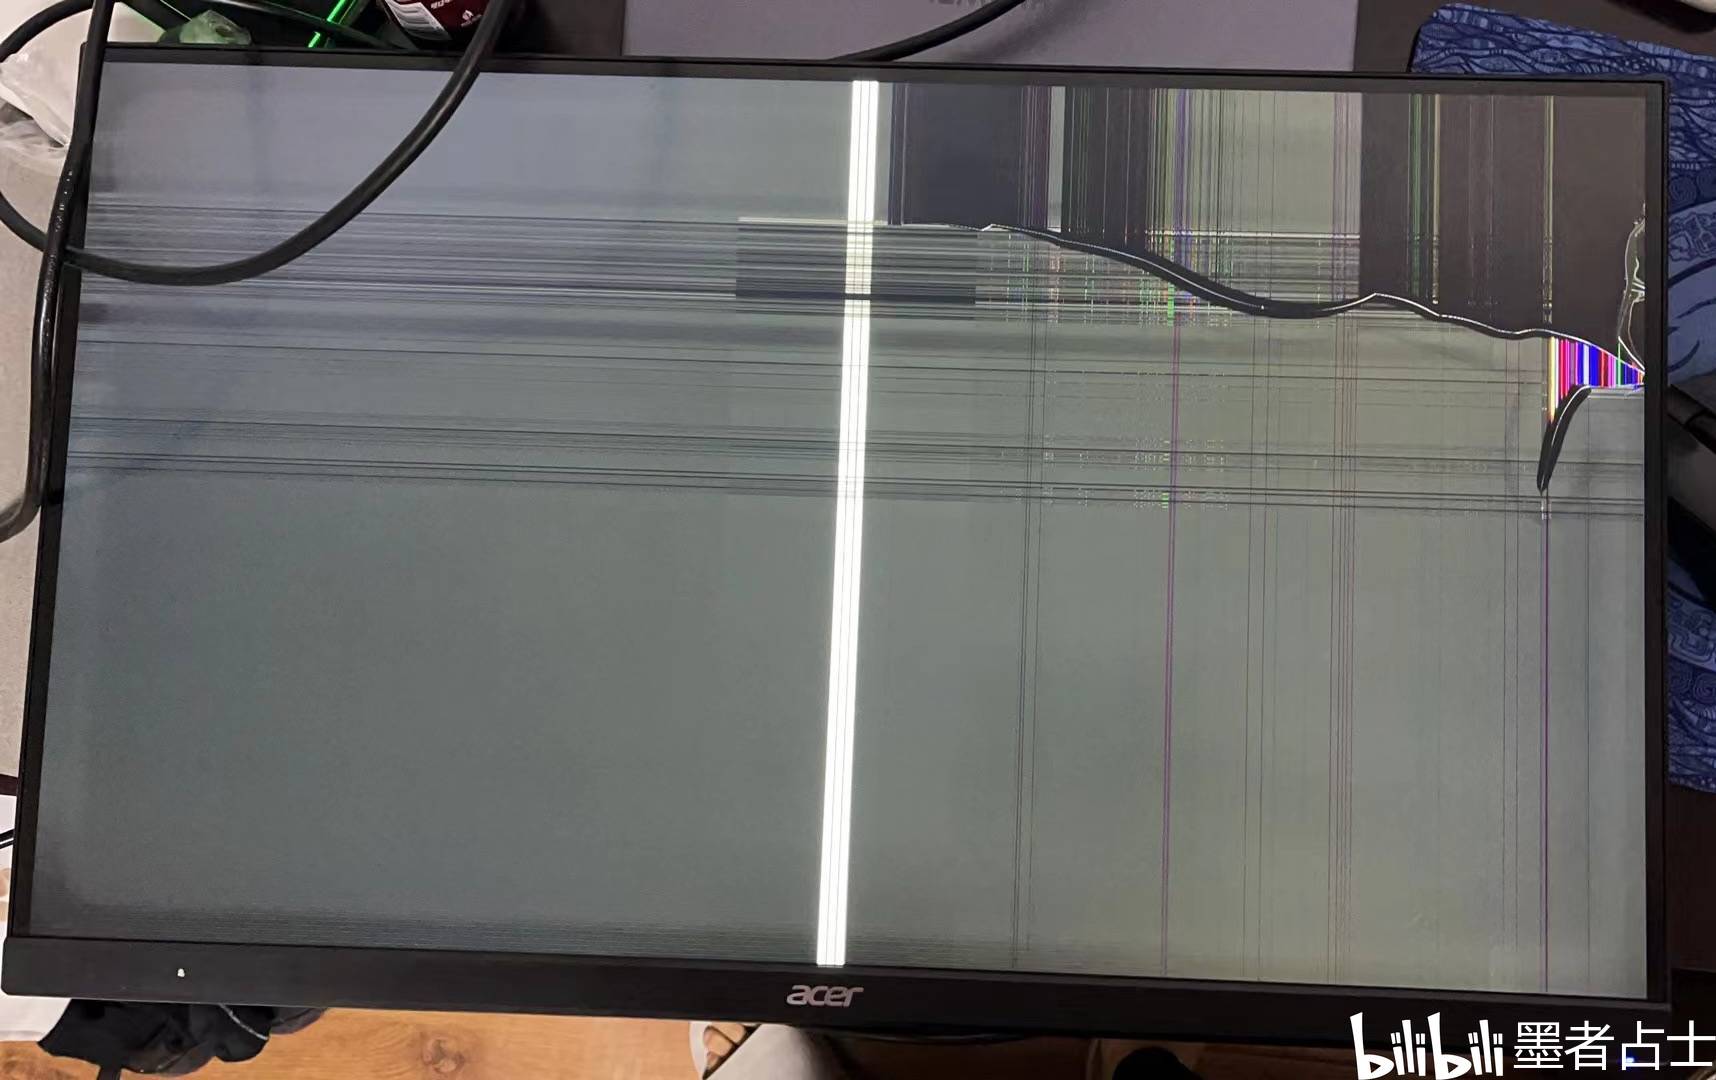 液晶屏面板不可修的典型现象之：破屏、碎屏、裂屏的故障图集 - 哔哩哔哩